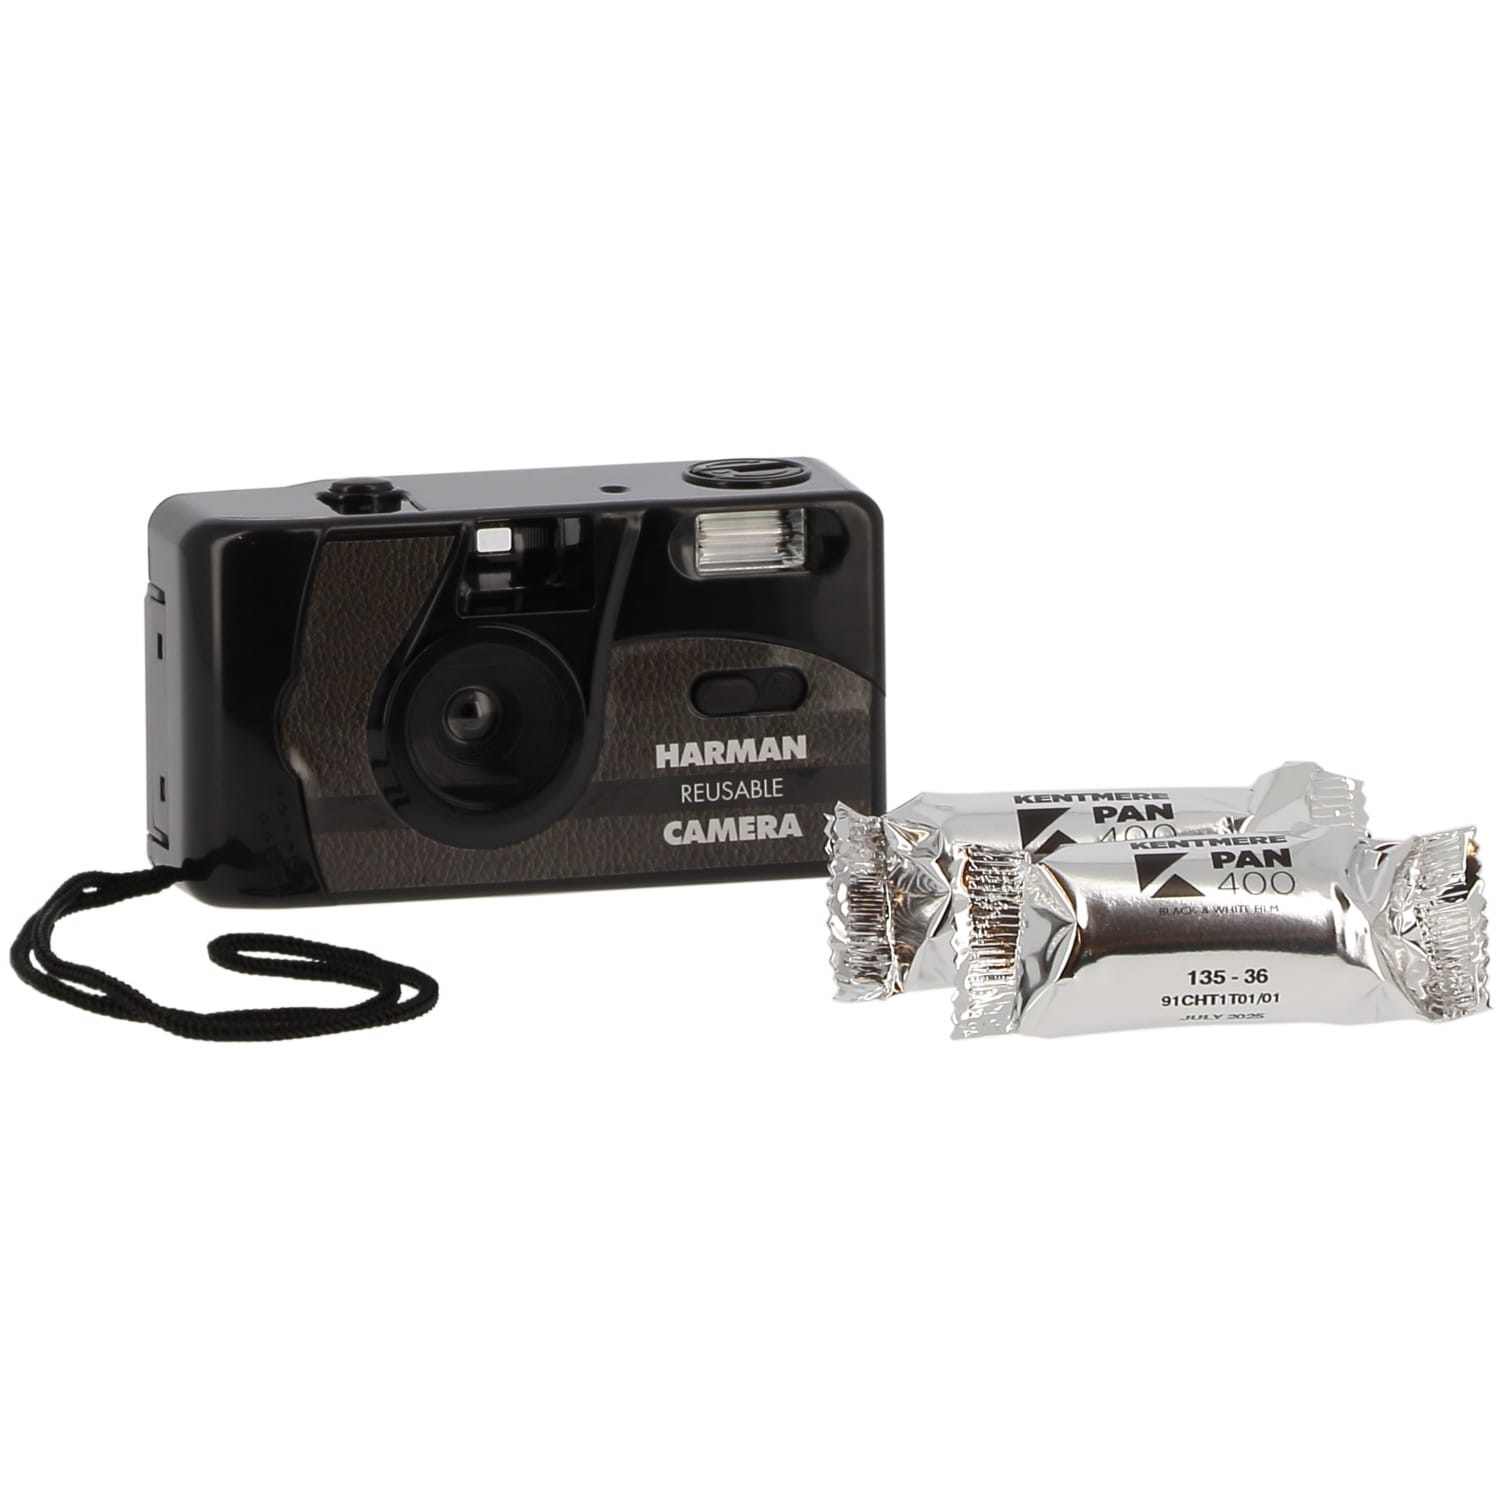 HARMAN appareil photo compact réutilisable - Photo Signe des Temps